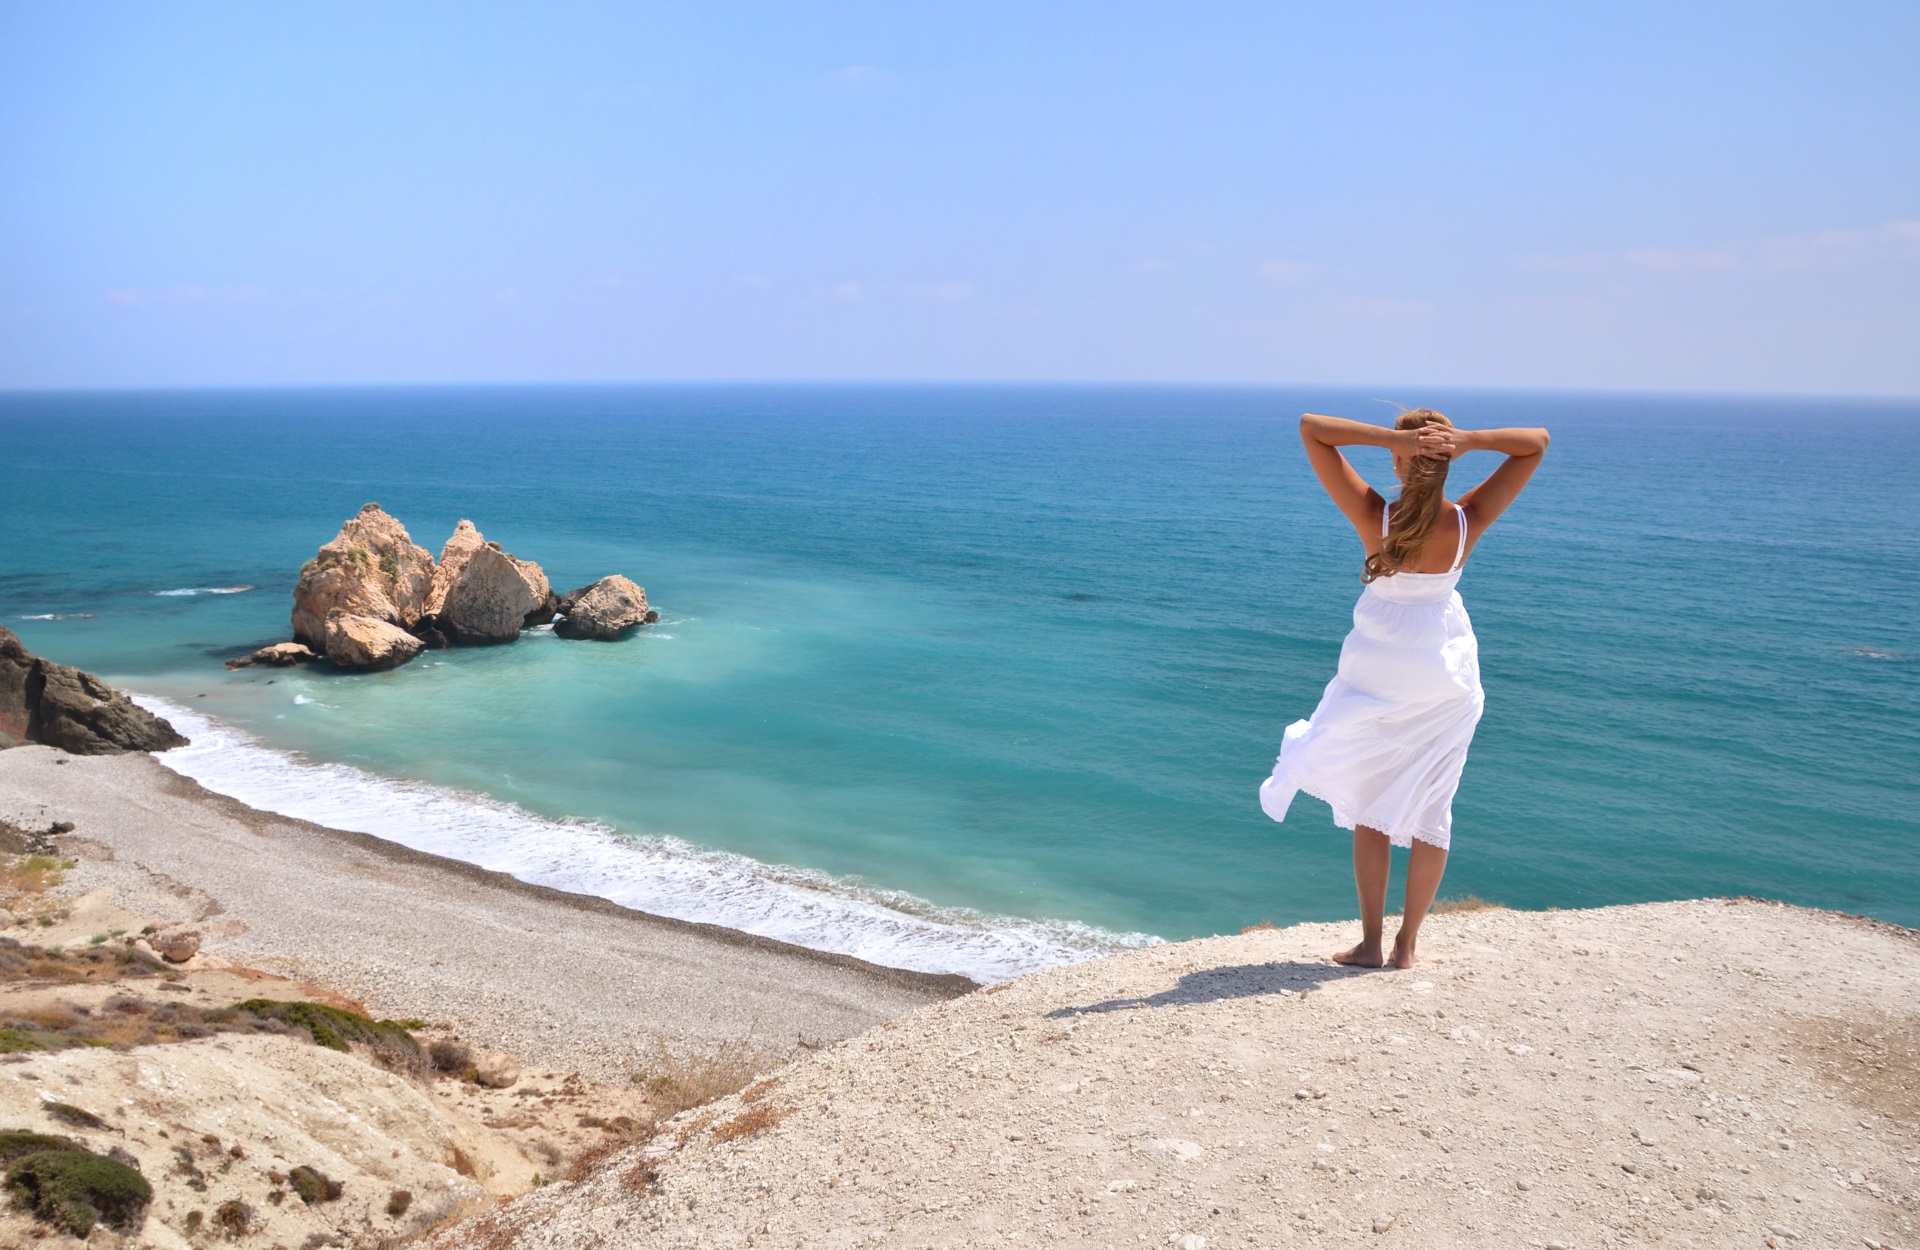 Я тоже хотел поехать к морю. Кипр Пафос море. Кипр туристы. Кипр Айя Напа 2022. Девушка на пляже.